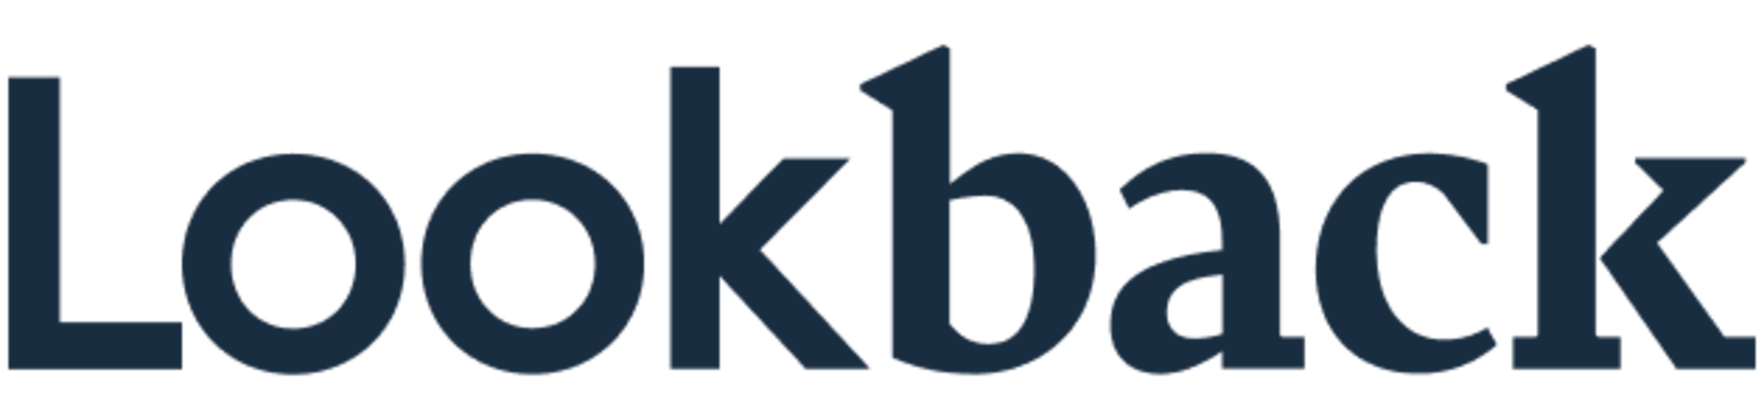 Lookback logo